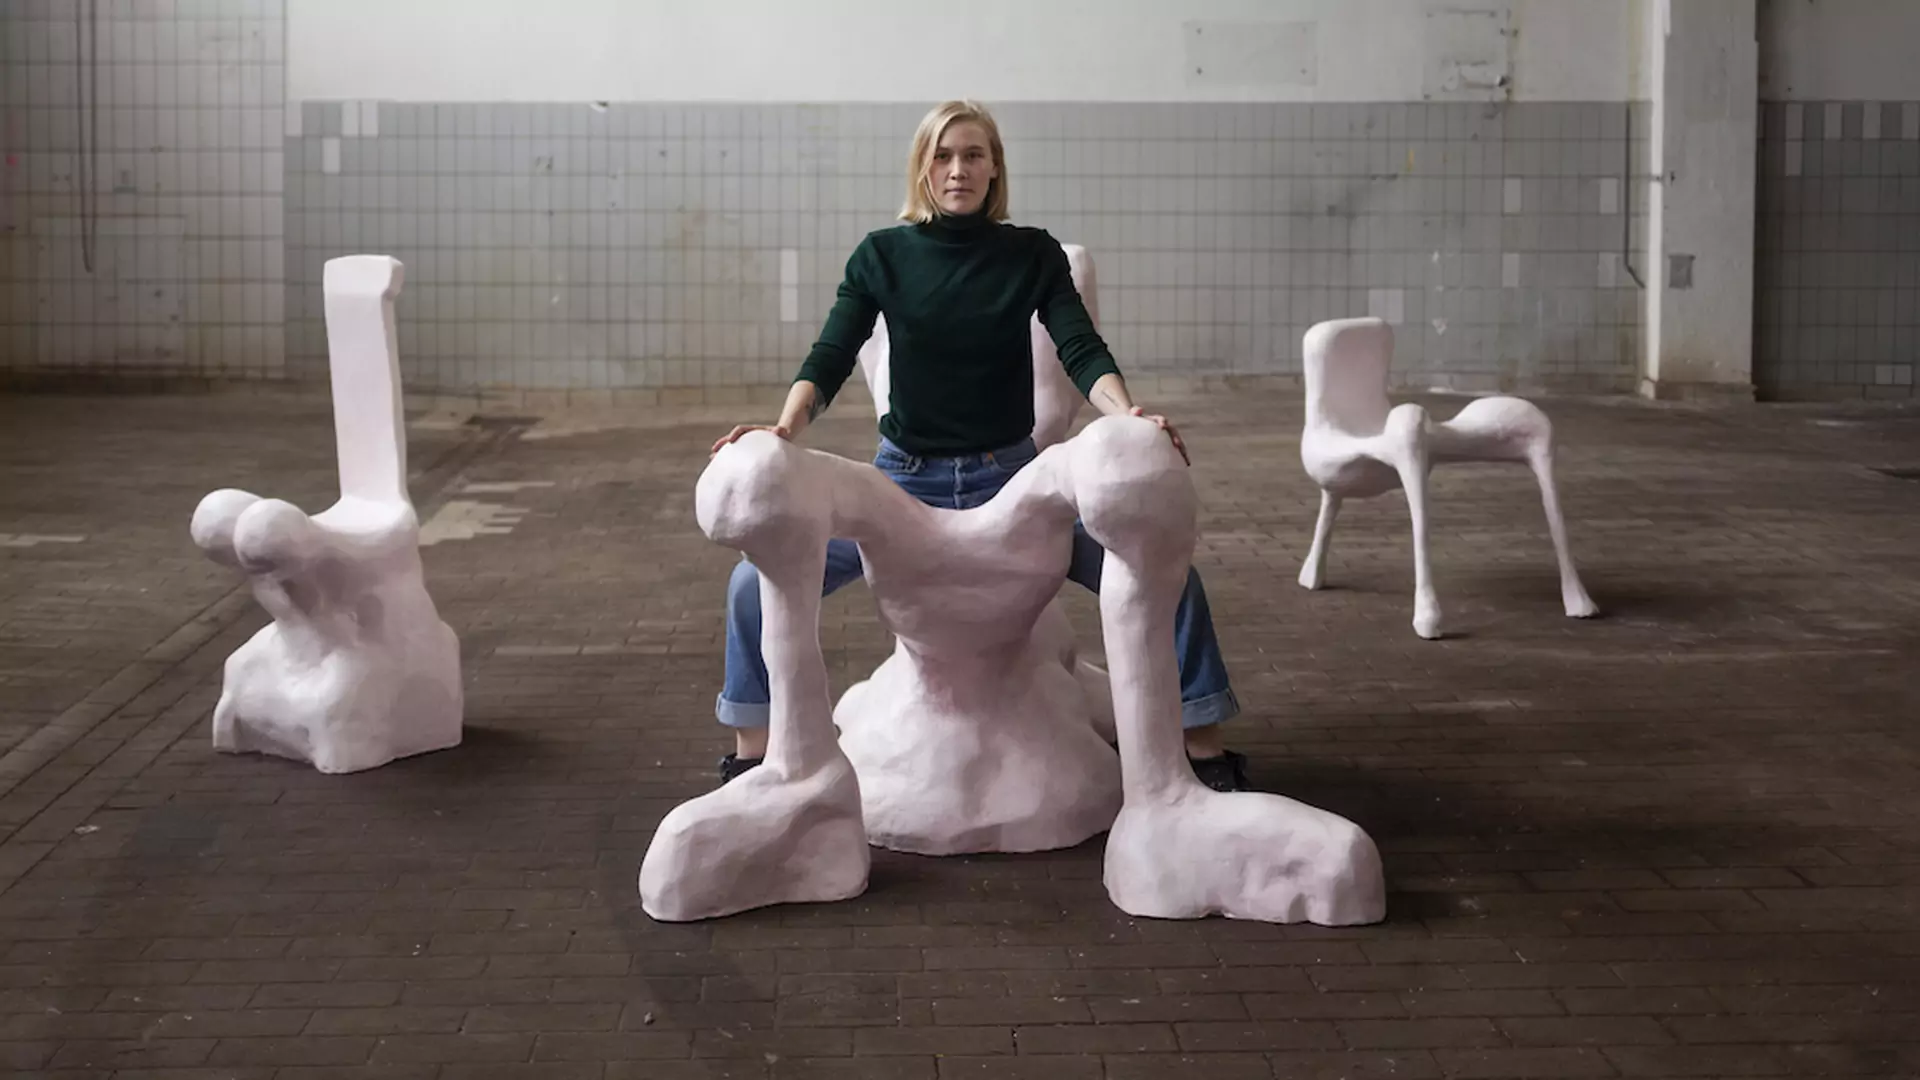 W Polsce stanie krzesło, na którym kobiety mogą rozkraczyć się, jak faceci w komunikacji miejskiej